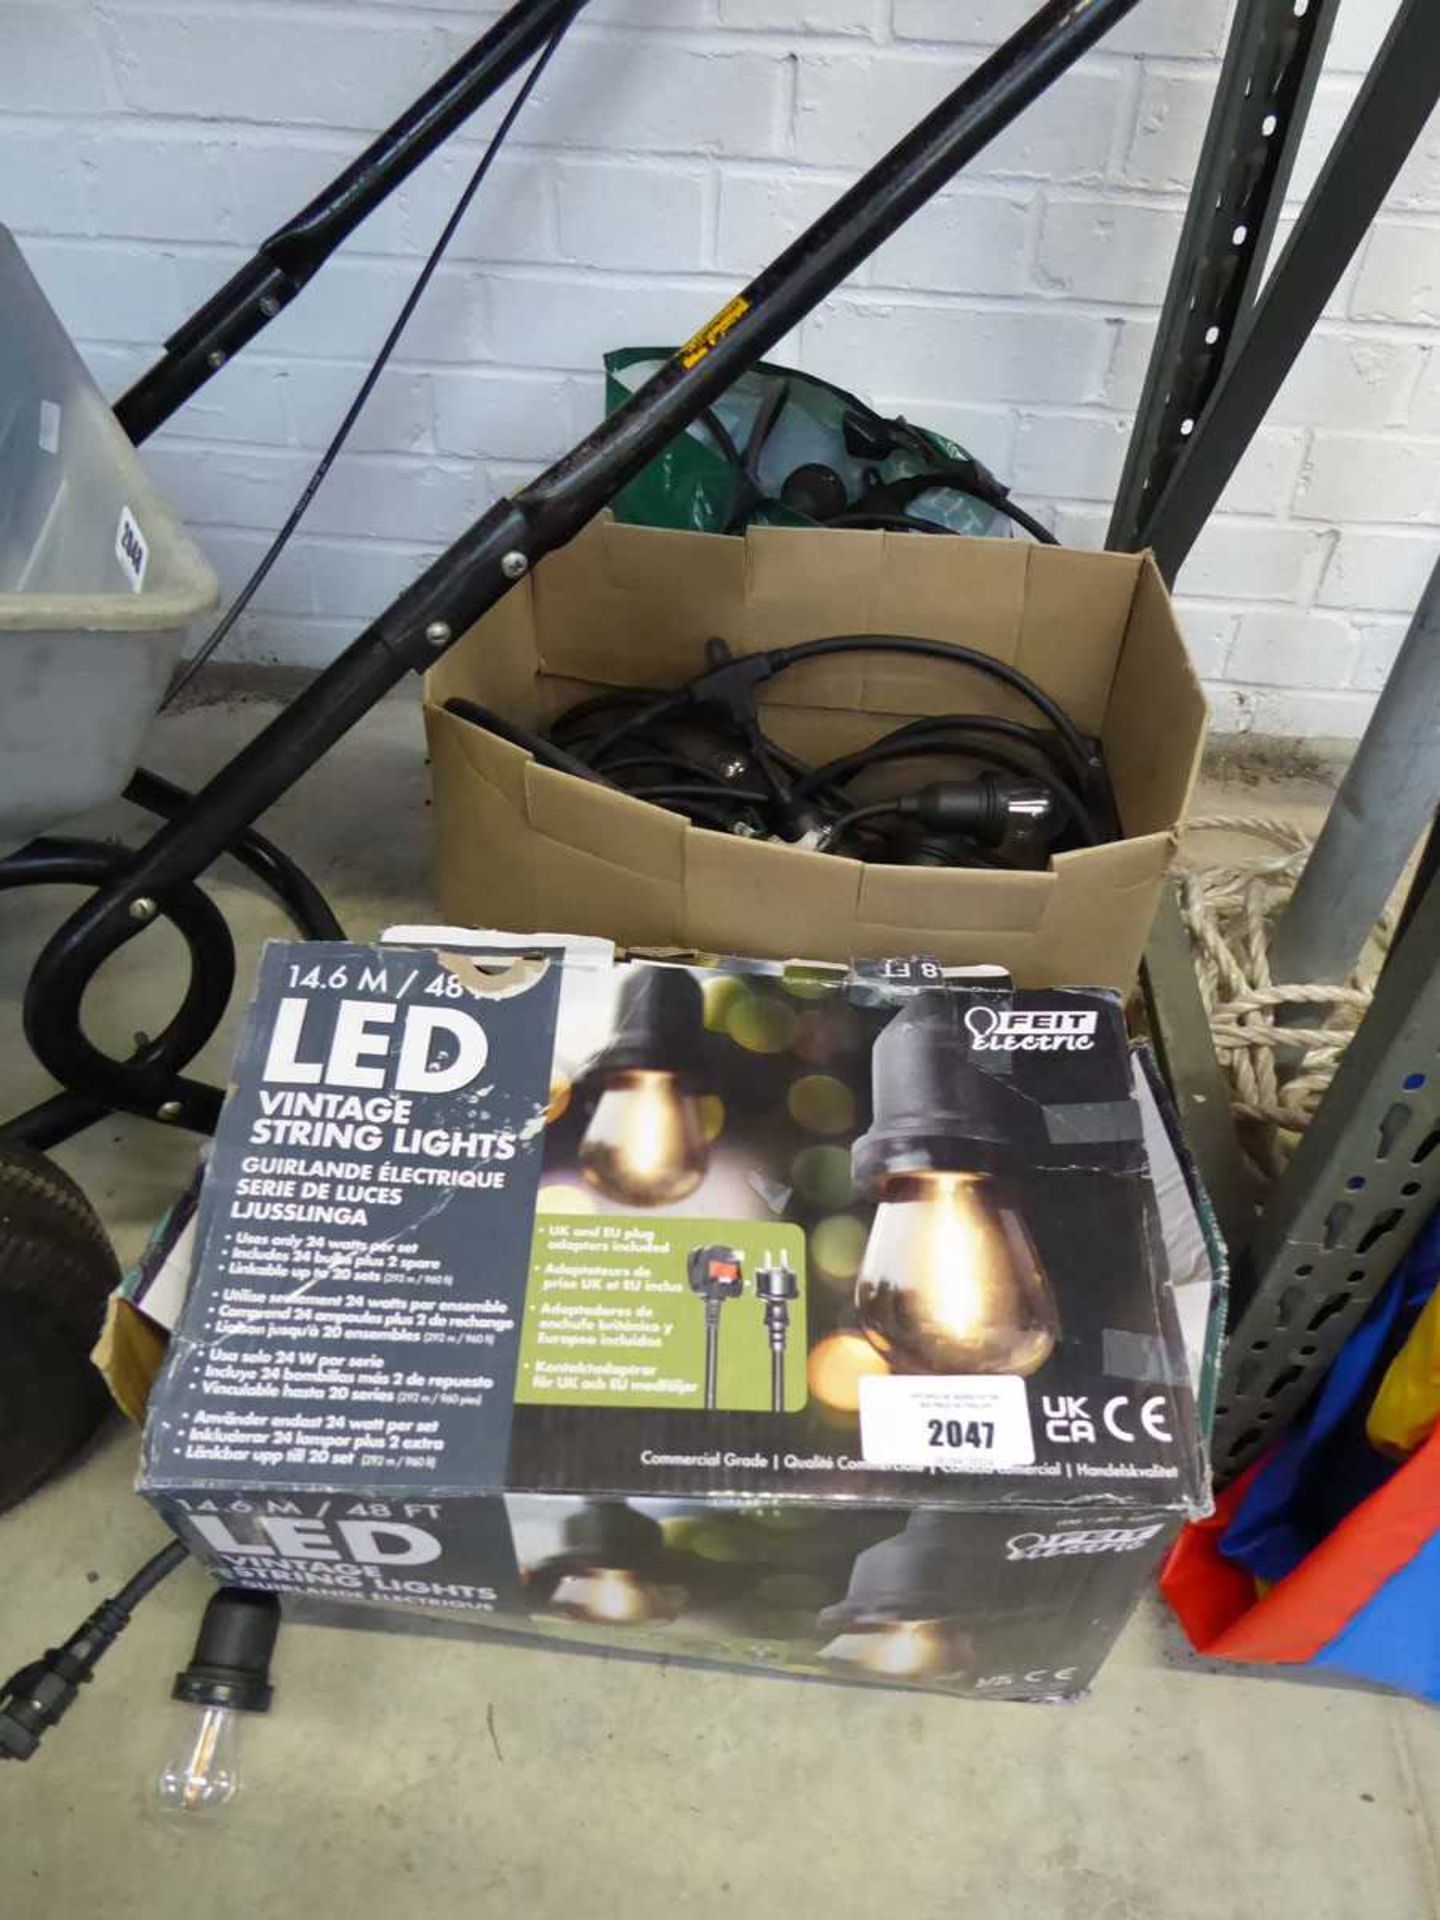 +VAT 2 sets of LED vintage garden string lights (1 boxed, 1 unboxed)